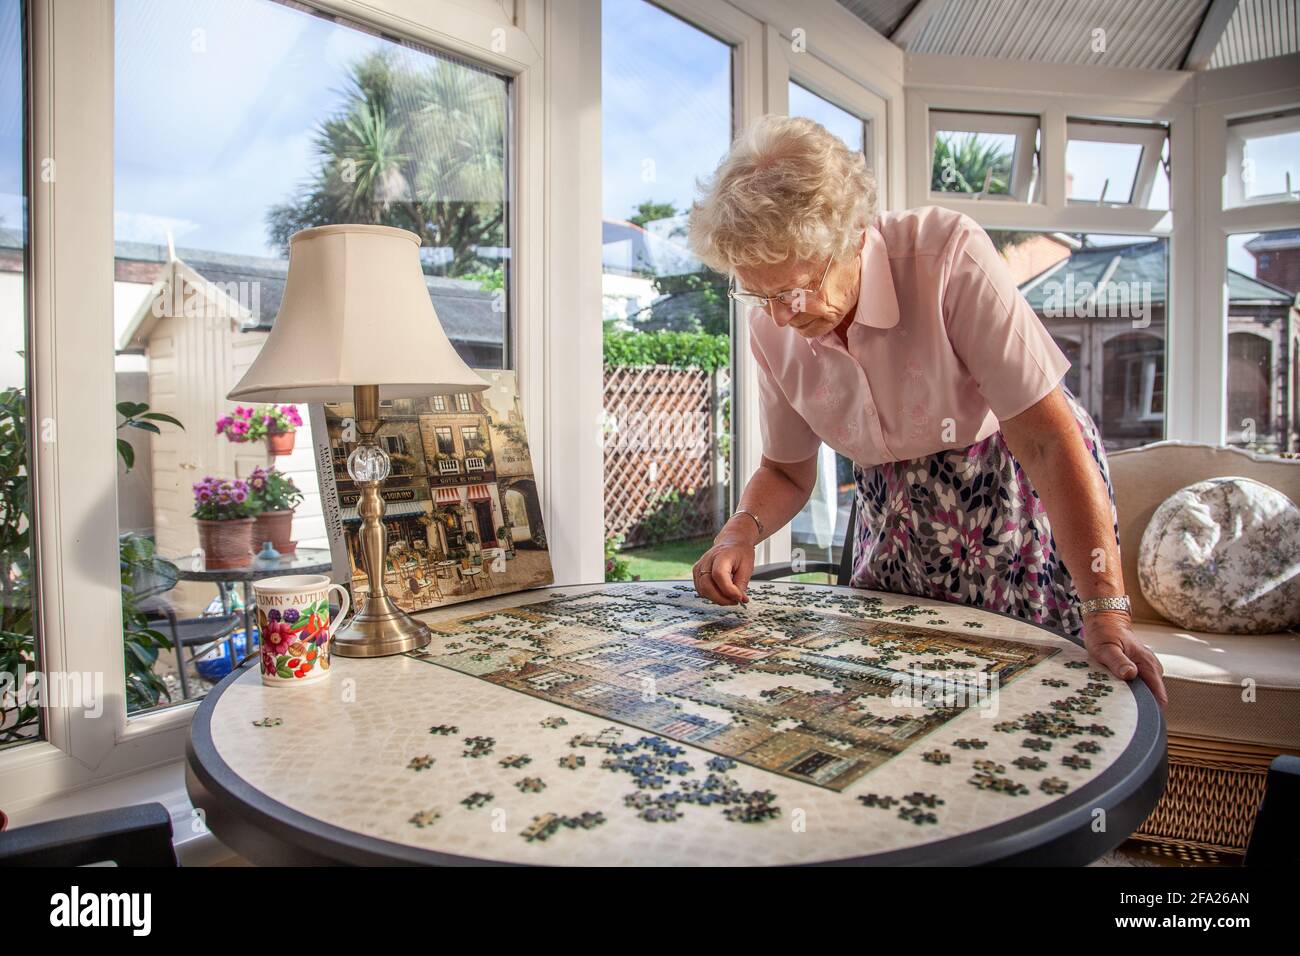 Femme âgée dans ses années 70 faisant un puzzle à sa résidence, Angleterre, Royaume-Uni Banque D'Images